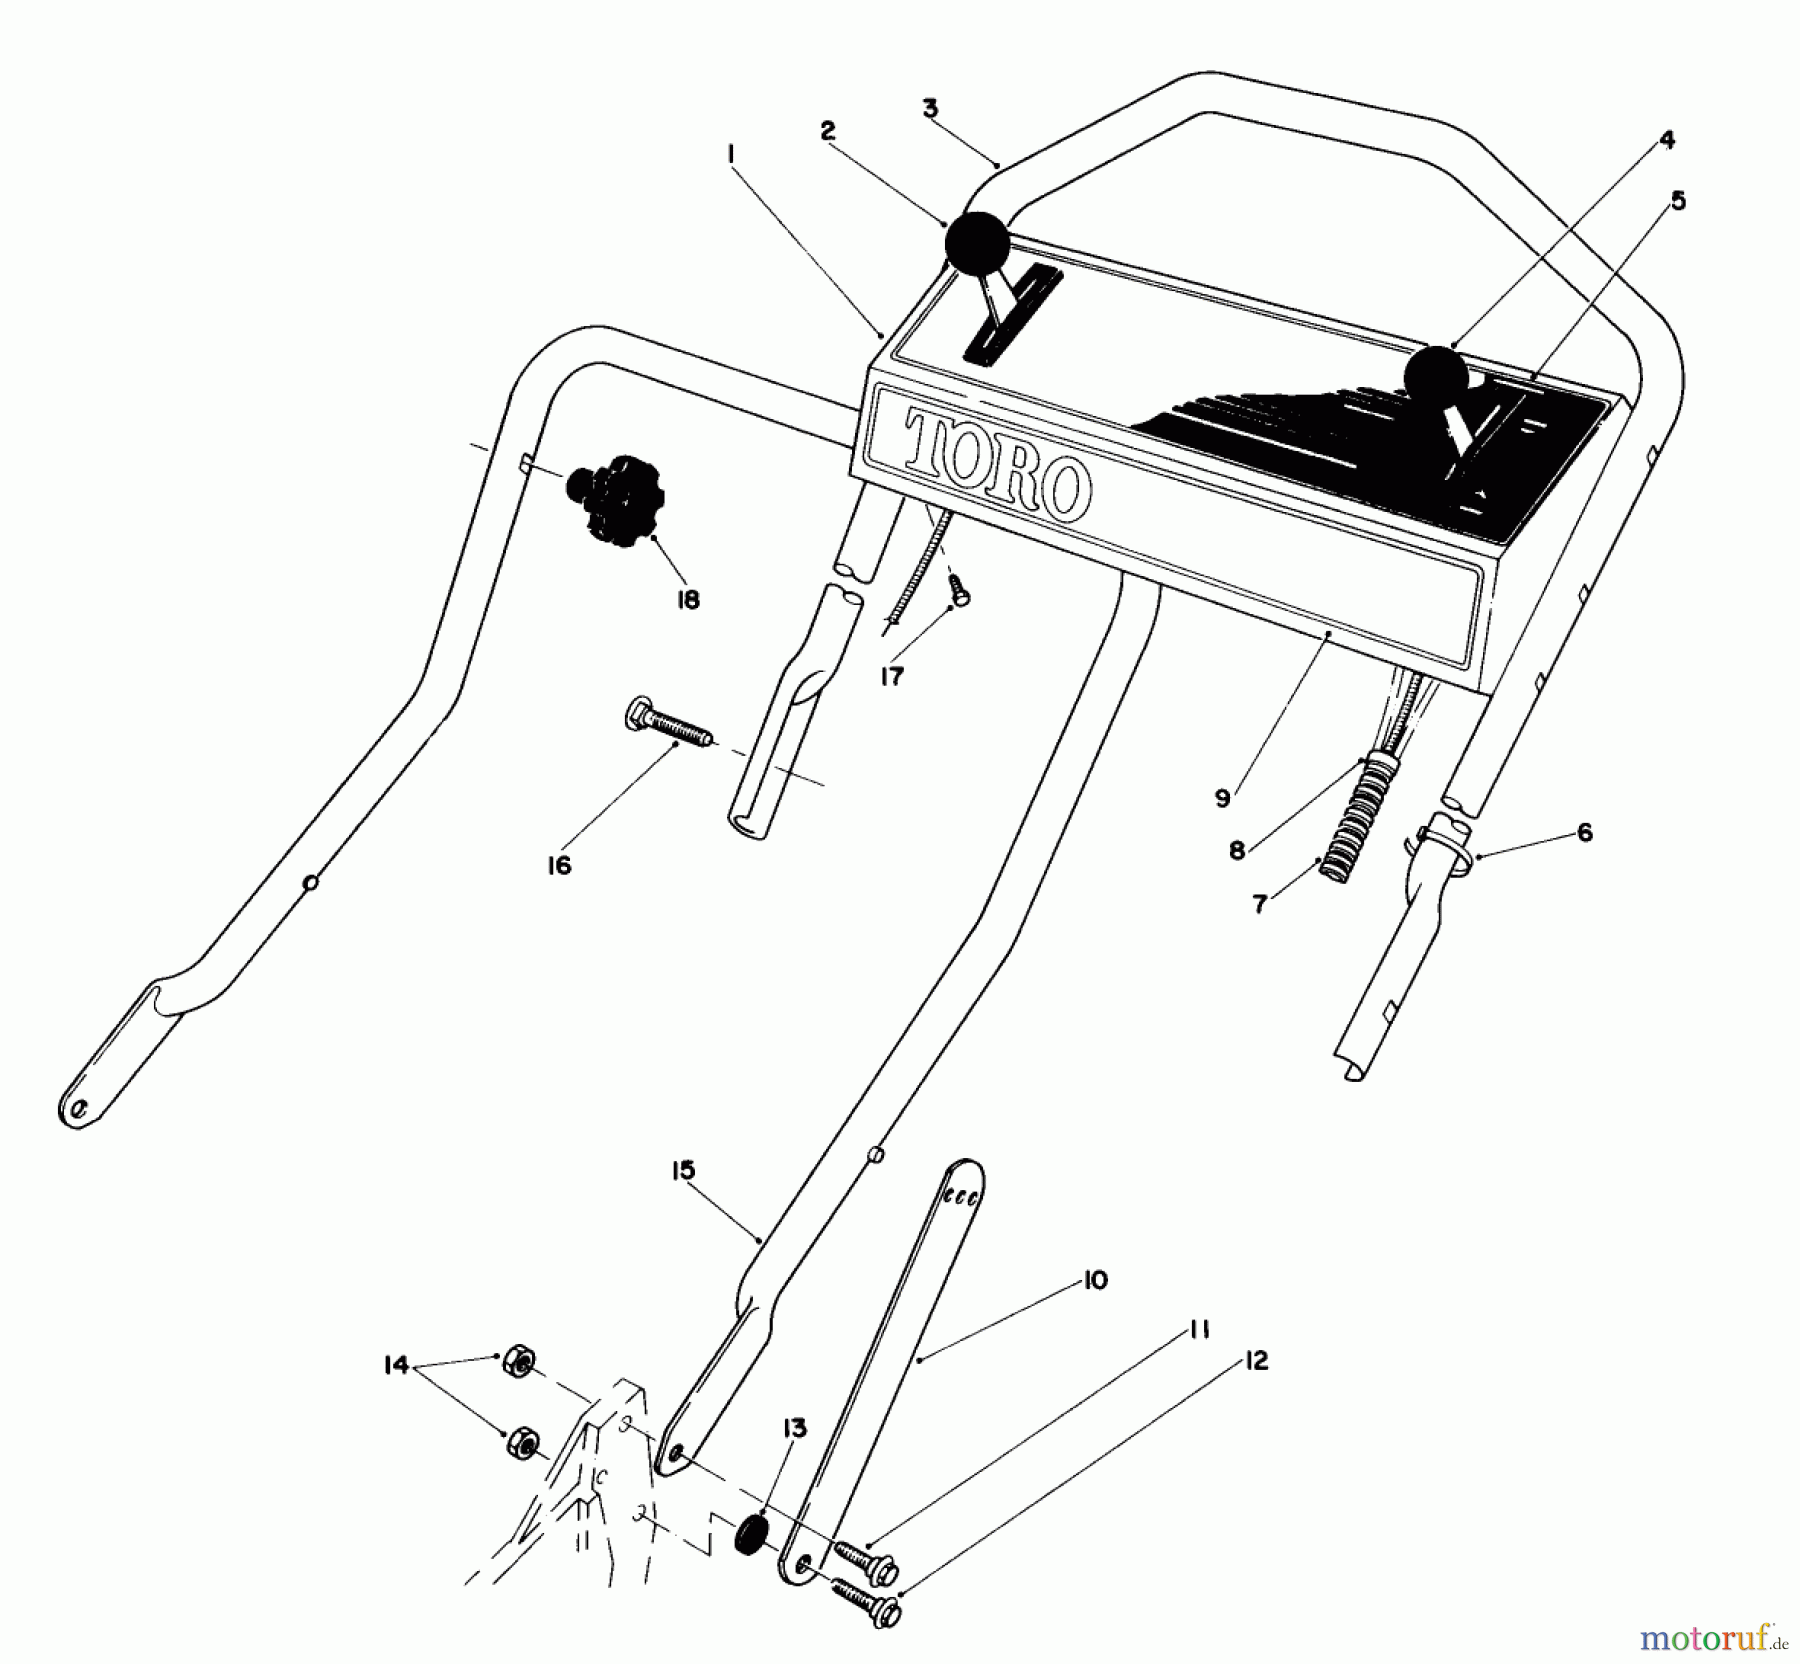  Toro Neu Mowers, Walk-Behind Seite 1 20672 - Toro Lawnmower, 1983 (3000001-3999999) HANDLE ASSEMBLY